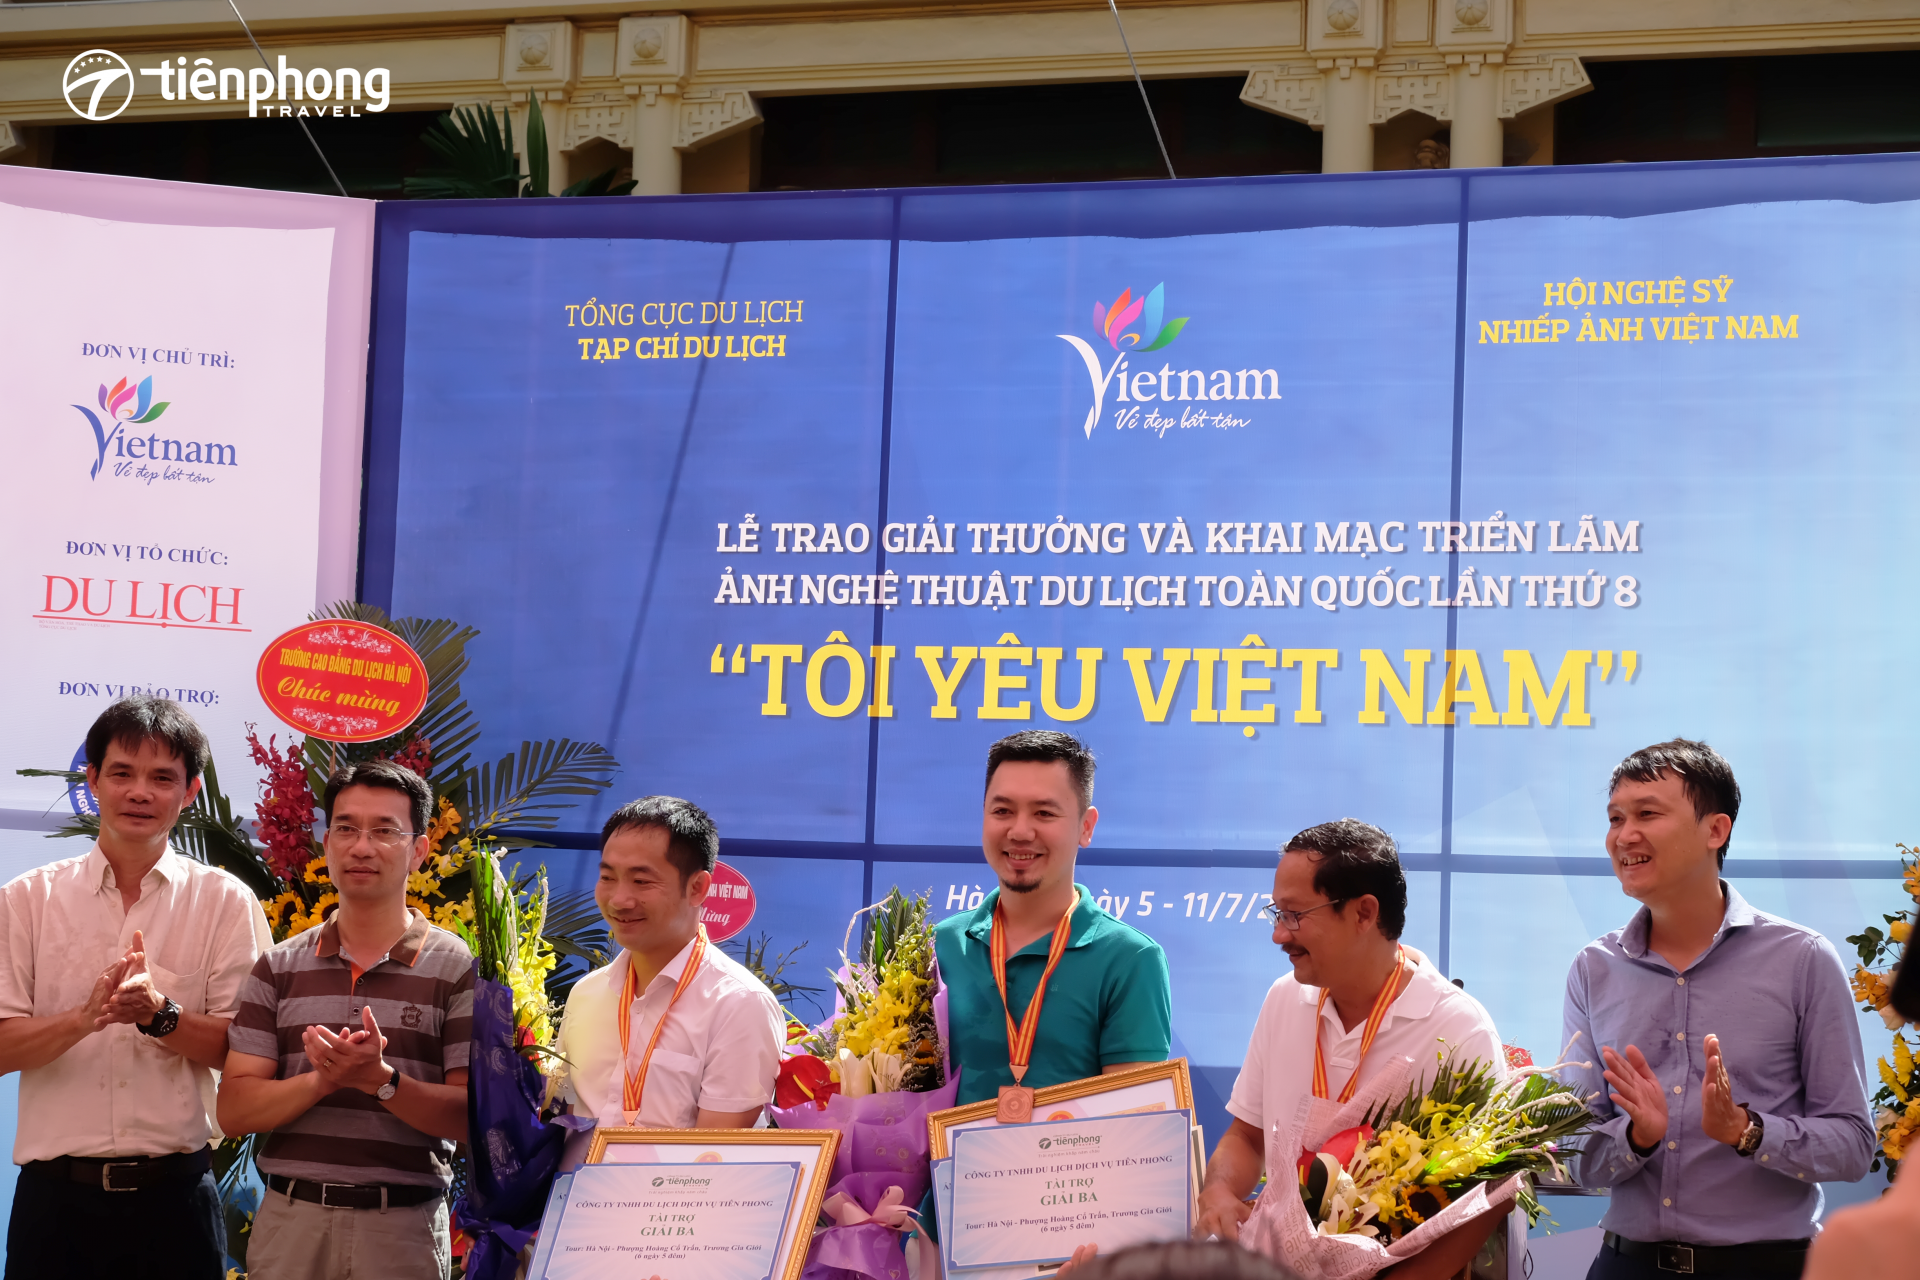 Tiên Phong Travel tài trợ cuộc thi ảnh nghệ thuật du lịch lần 8